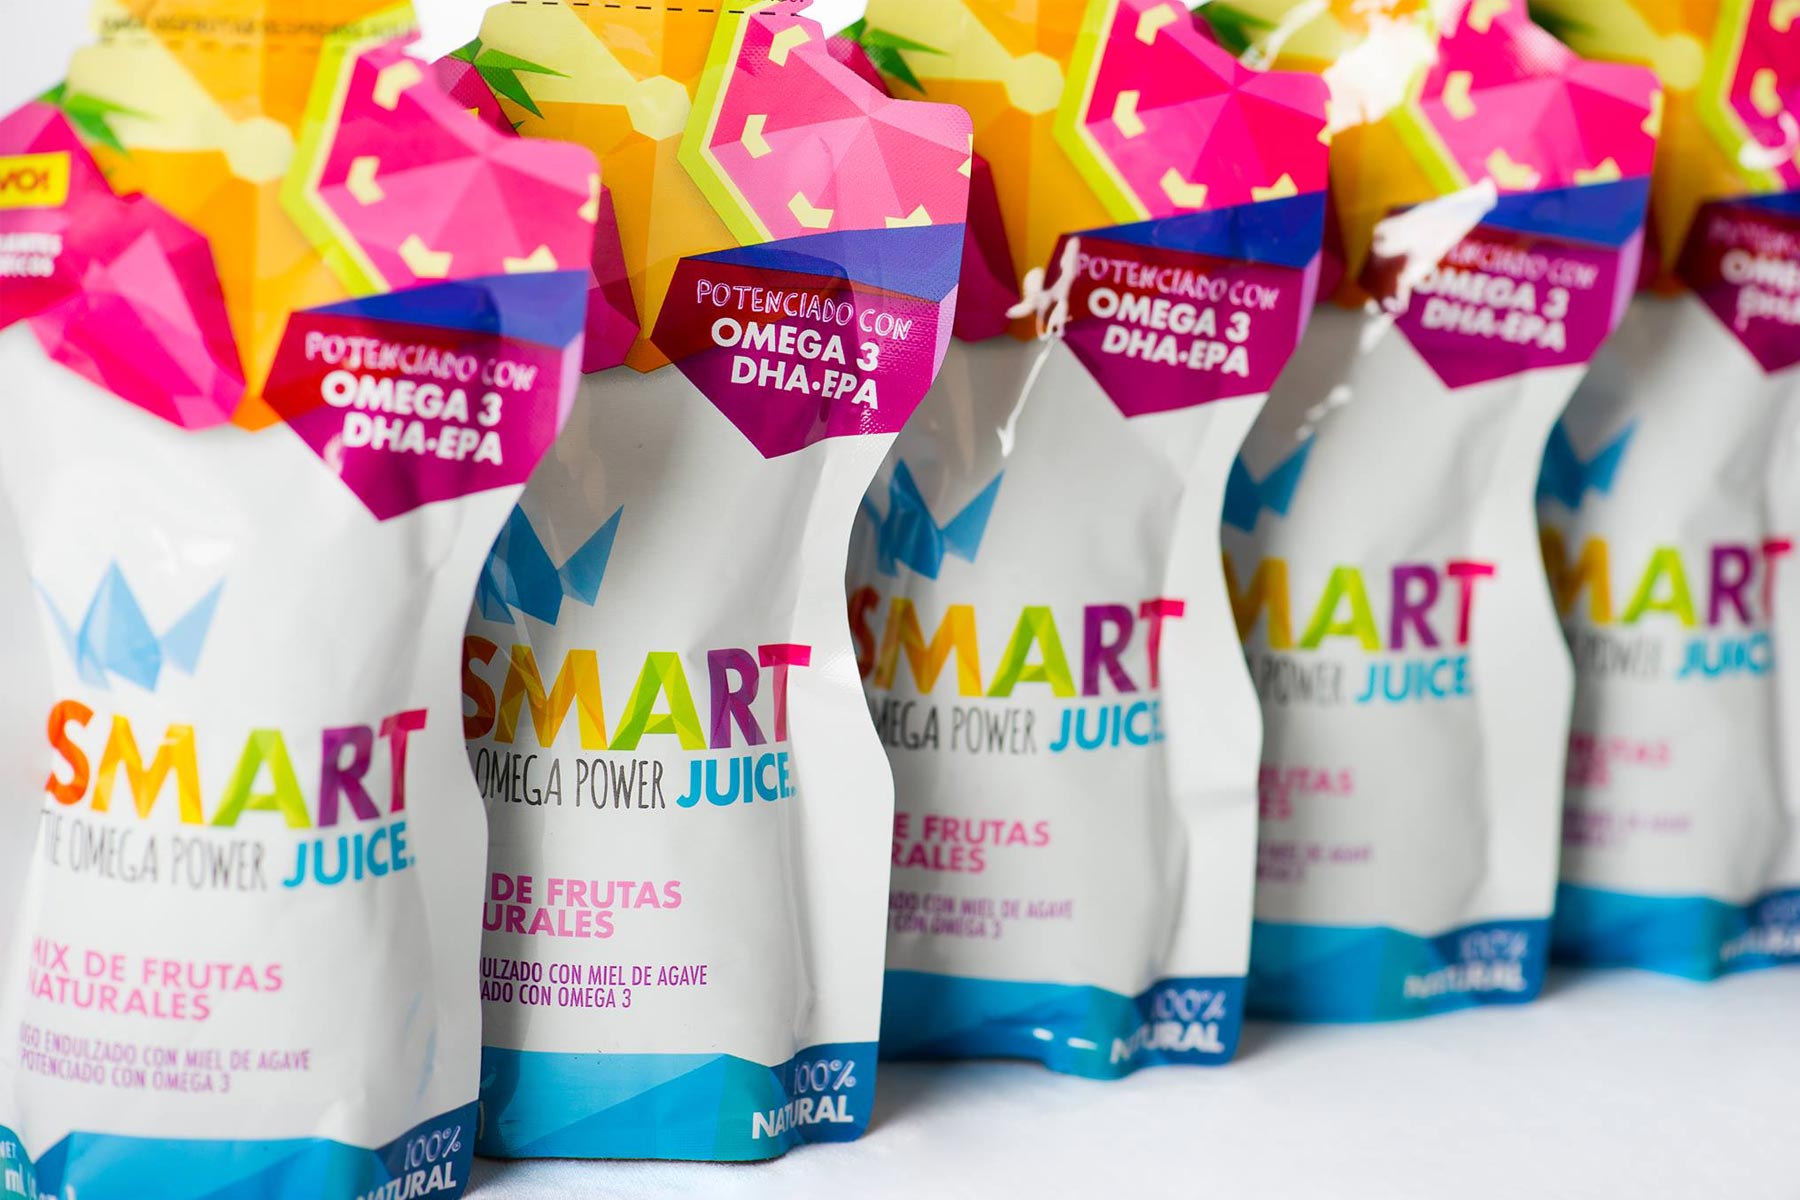 Smart Juice visual concepta - Dosmaquinas